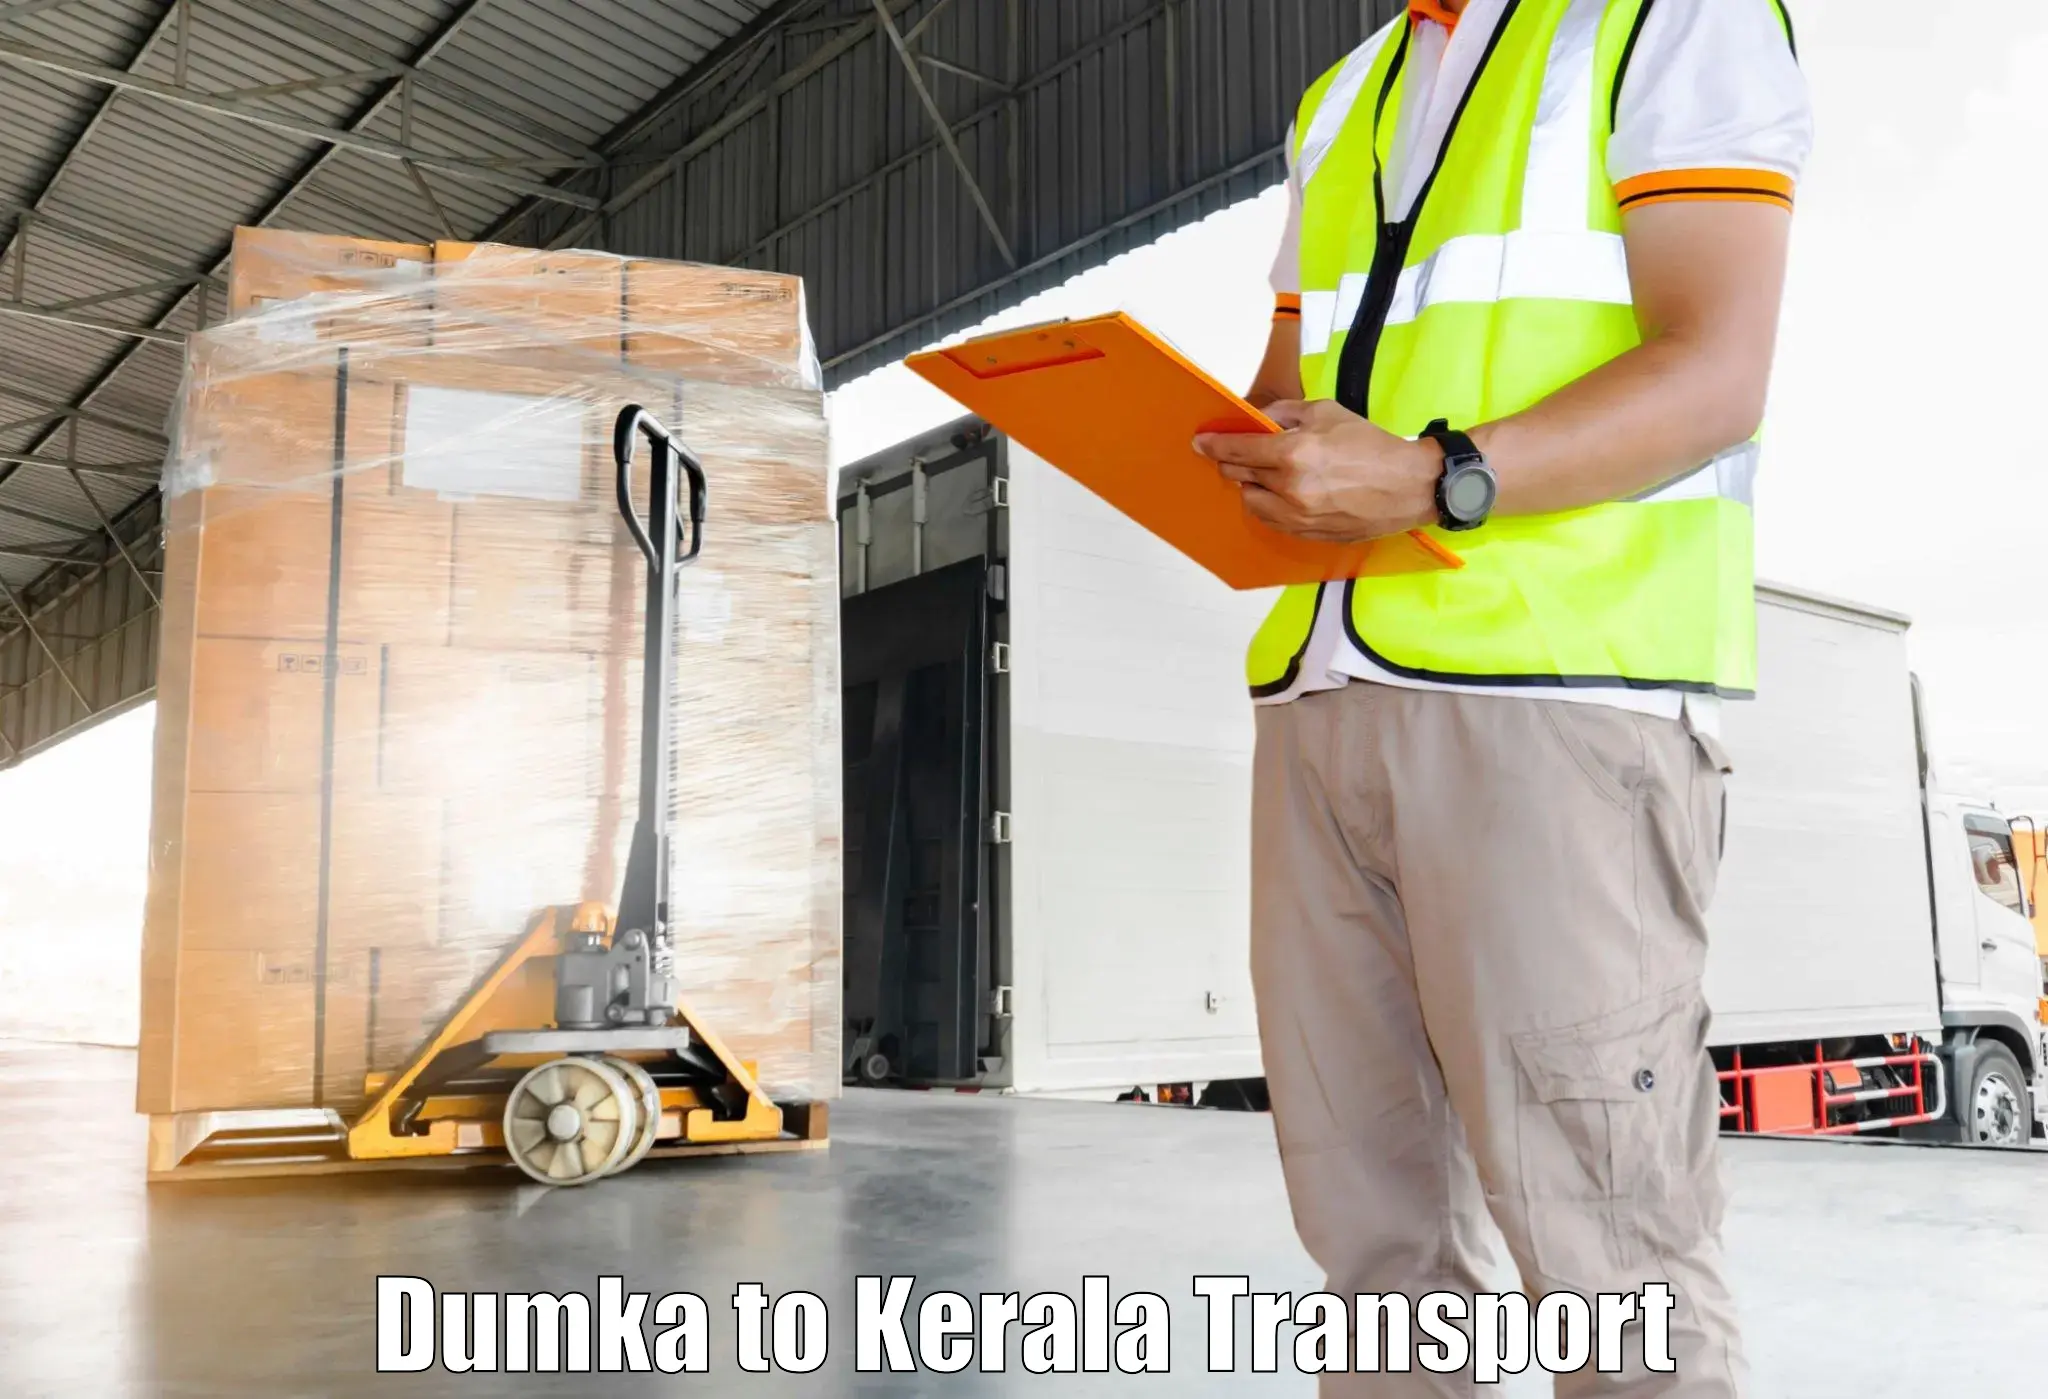 Commercial transport service Dumka to Kanjirapally